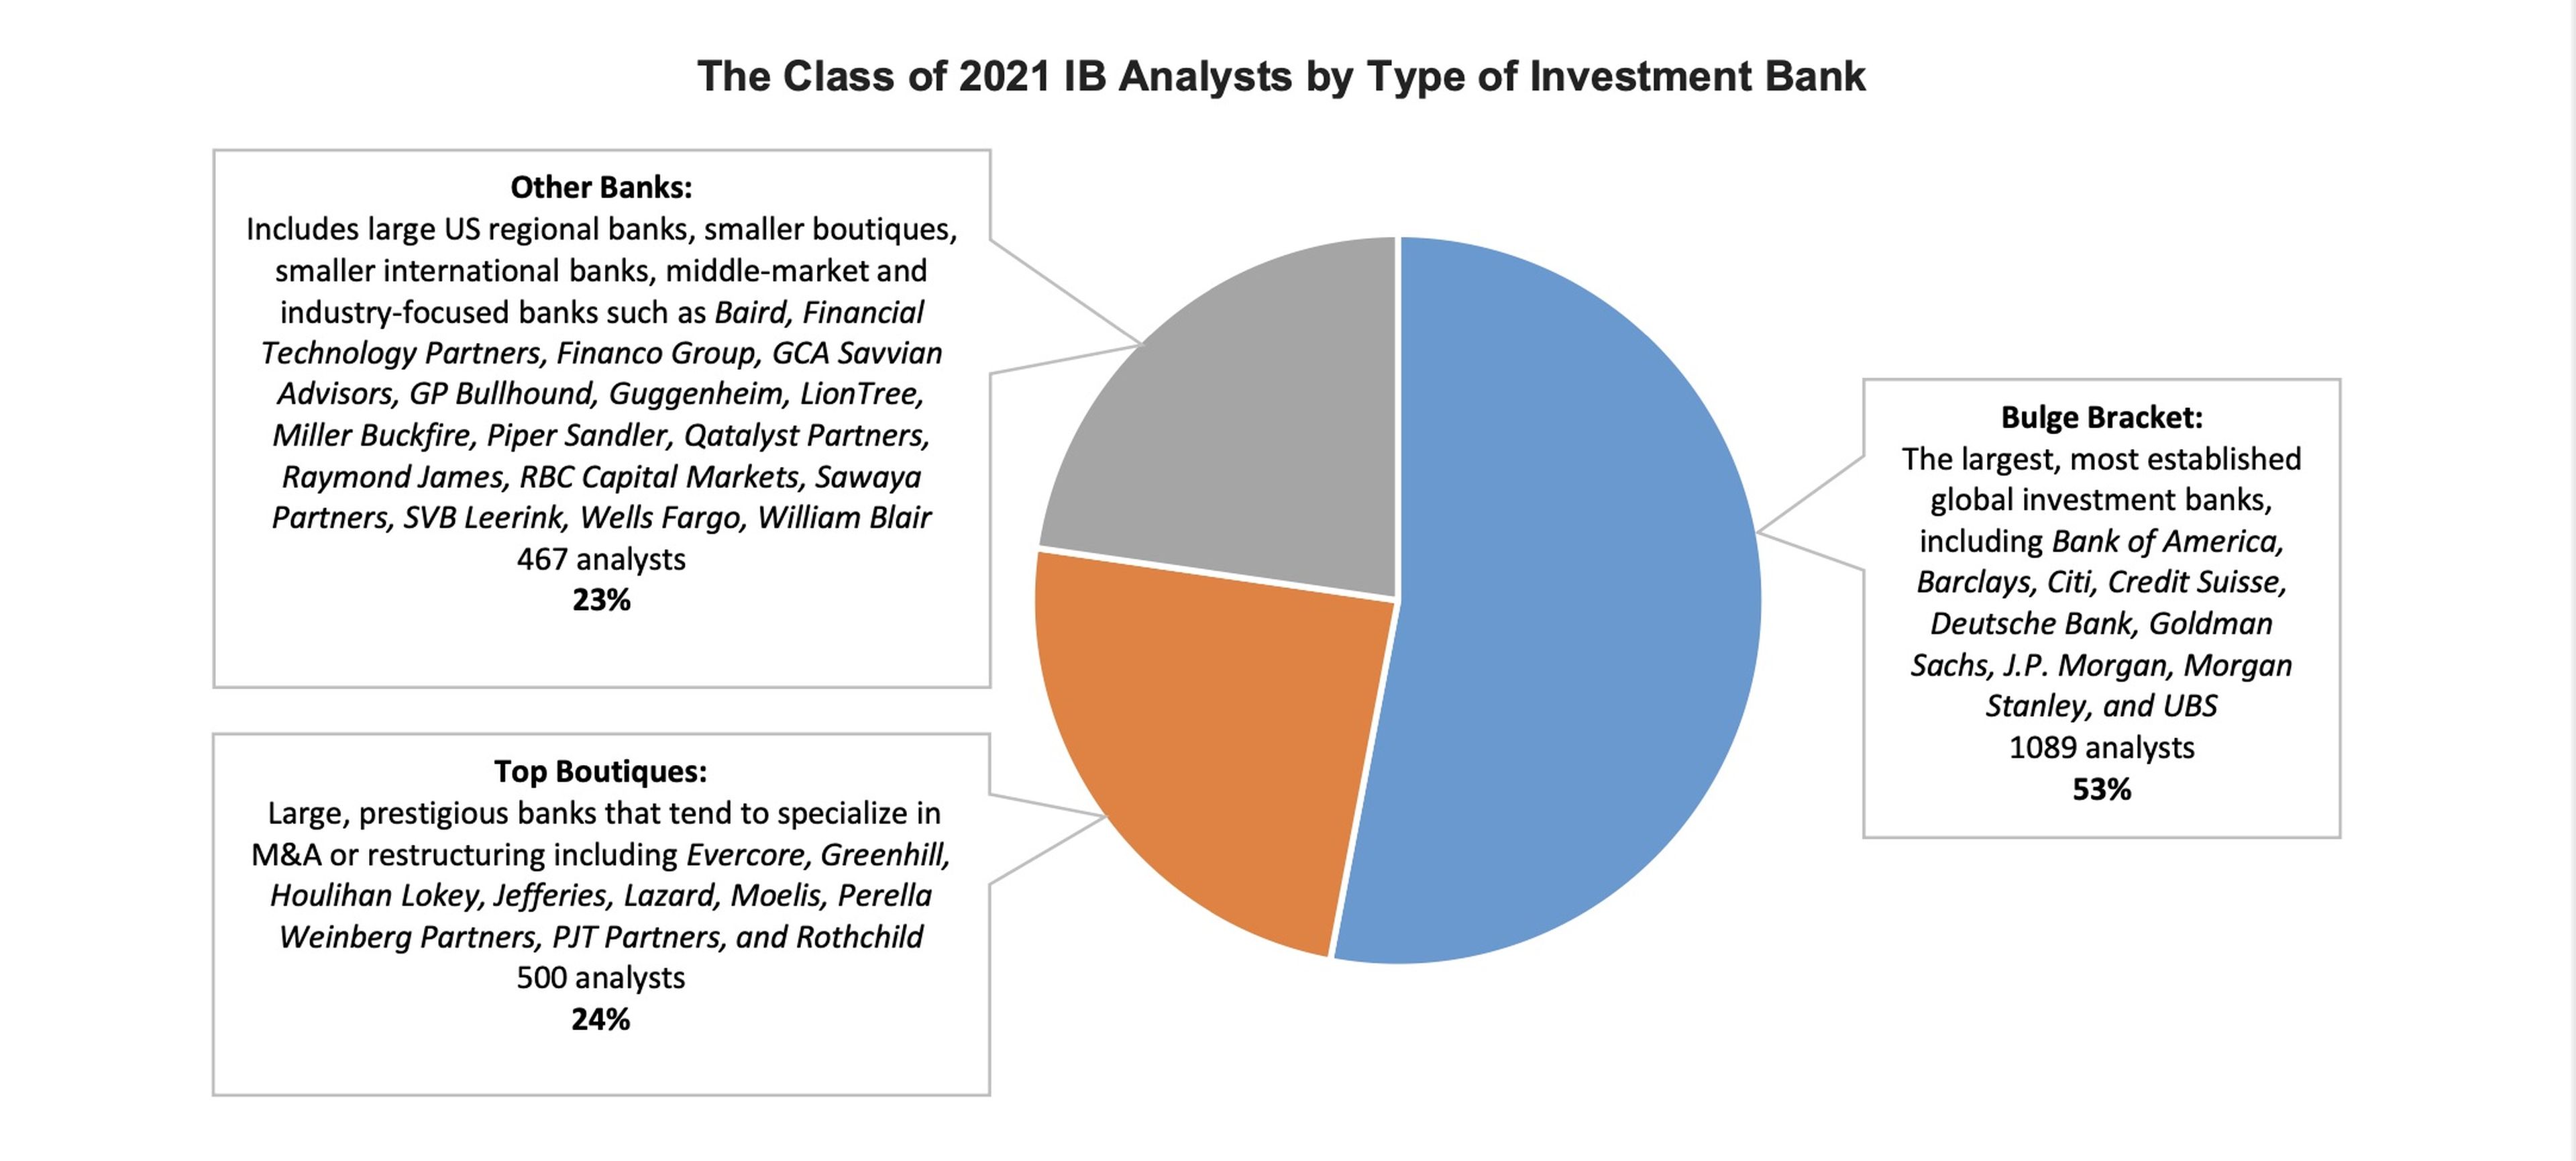 La promoción de analistas IB de 2021 por tipo de banco de inversión.